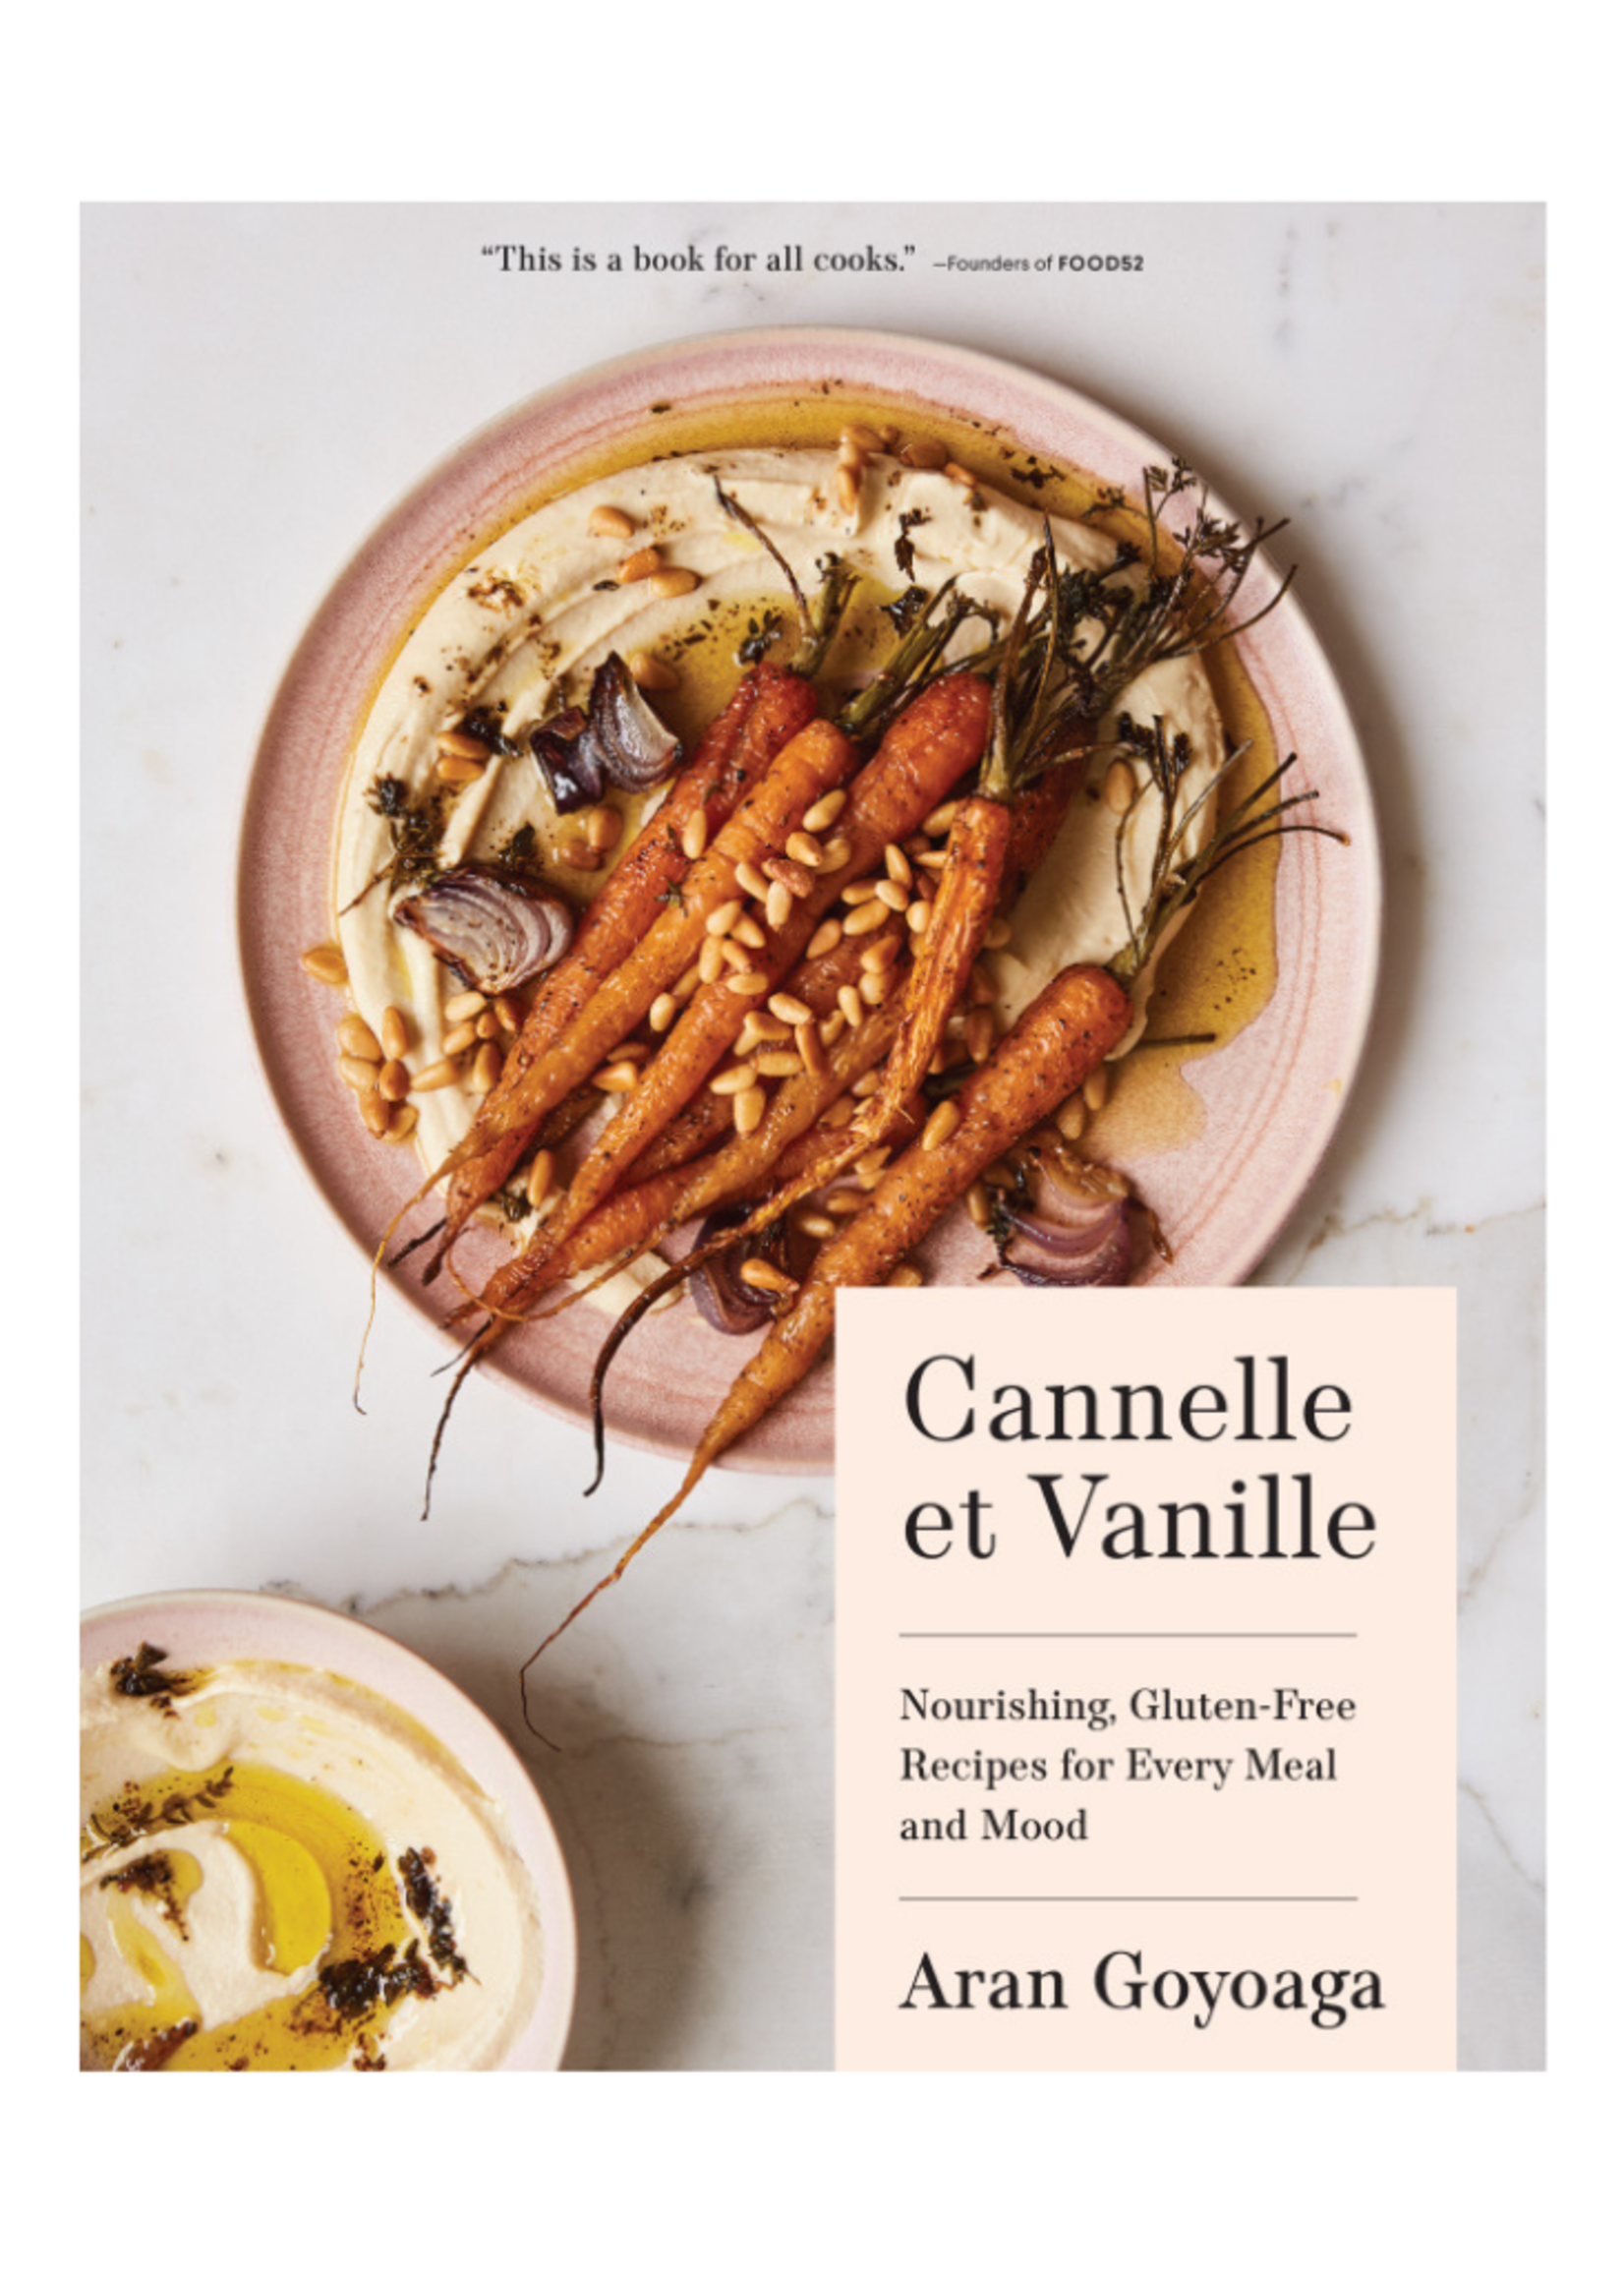 Random House Cannelle et Vanille by Aran Goyoaga